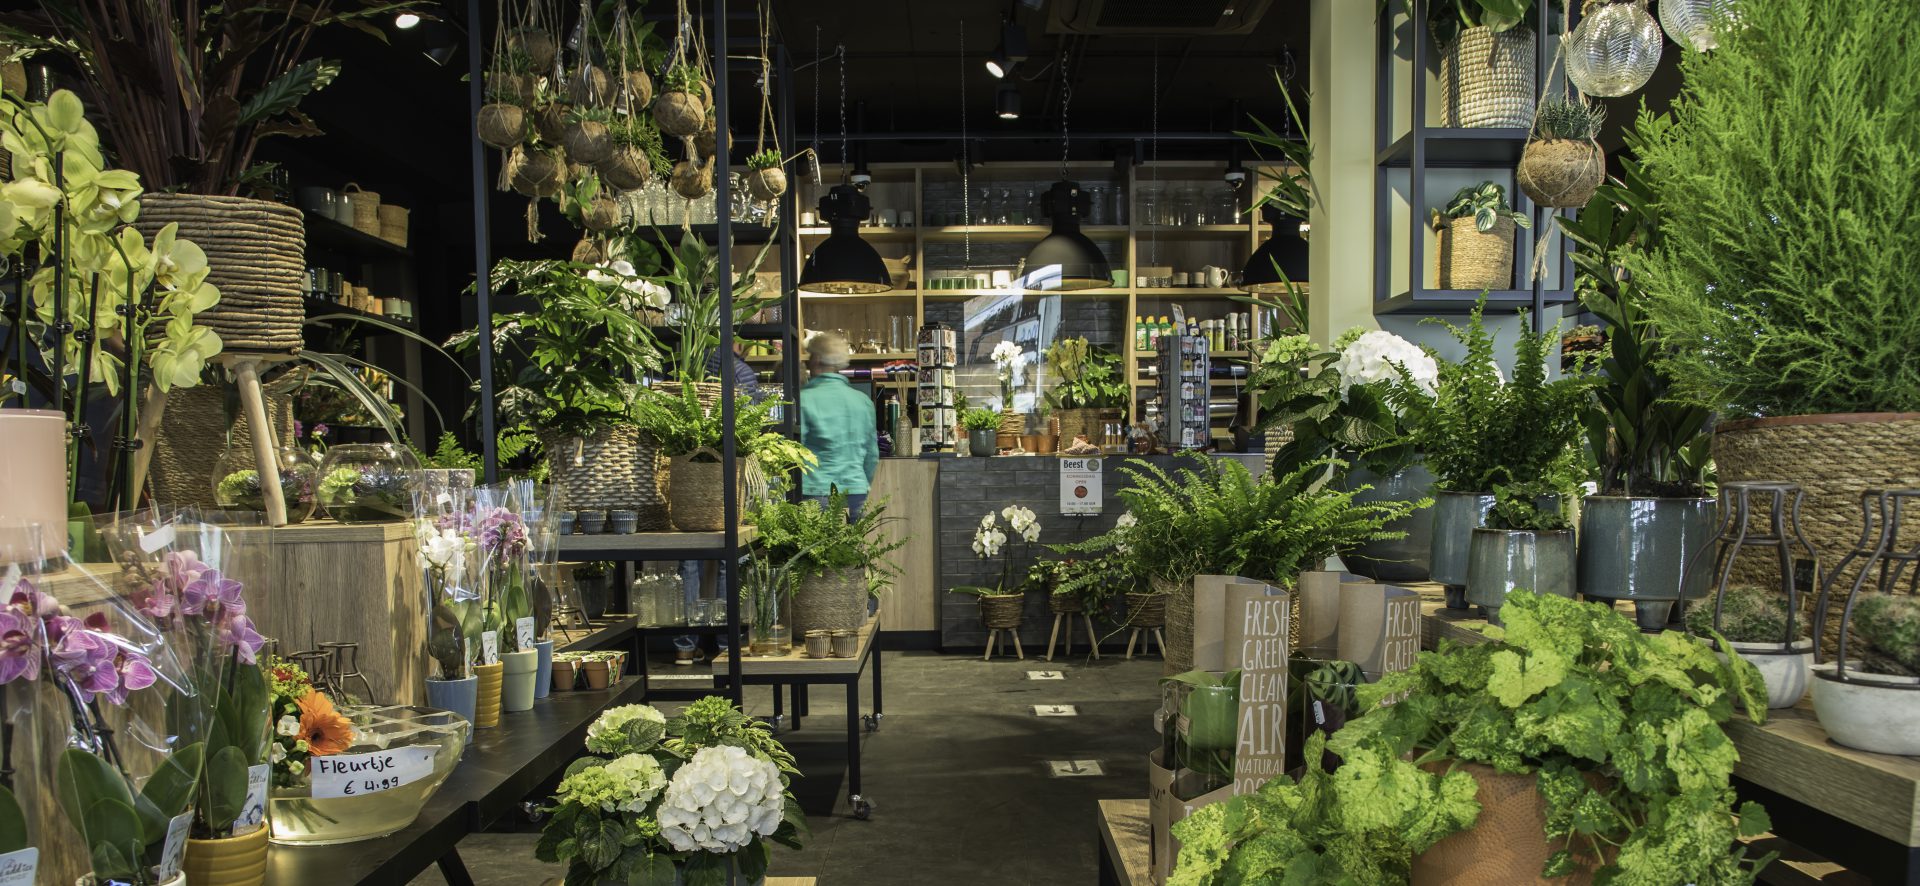 Van Beest Bloemen | Leusden - Retailketens